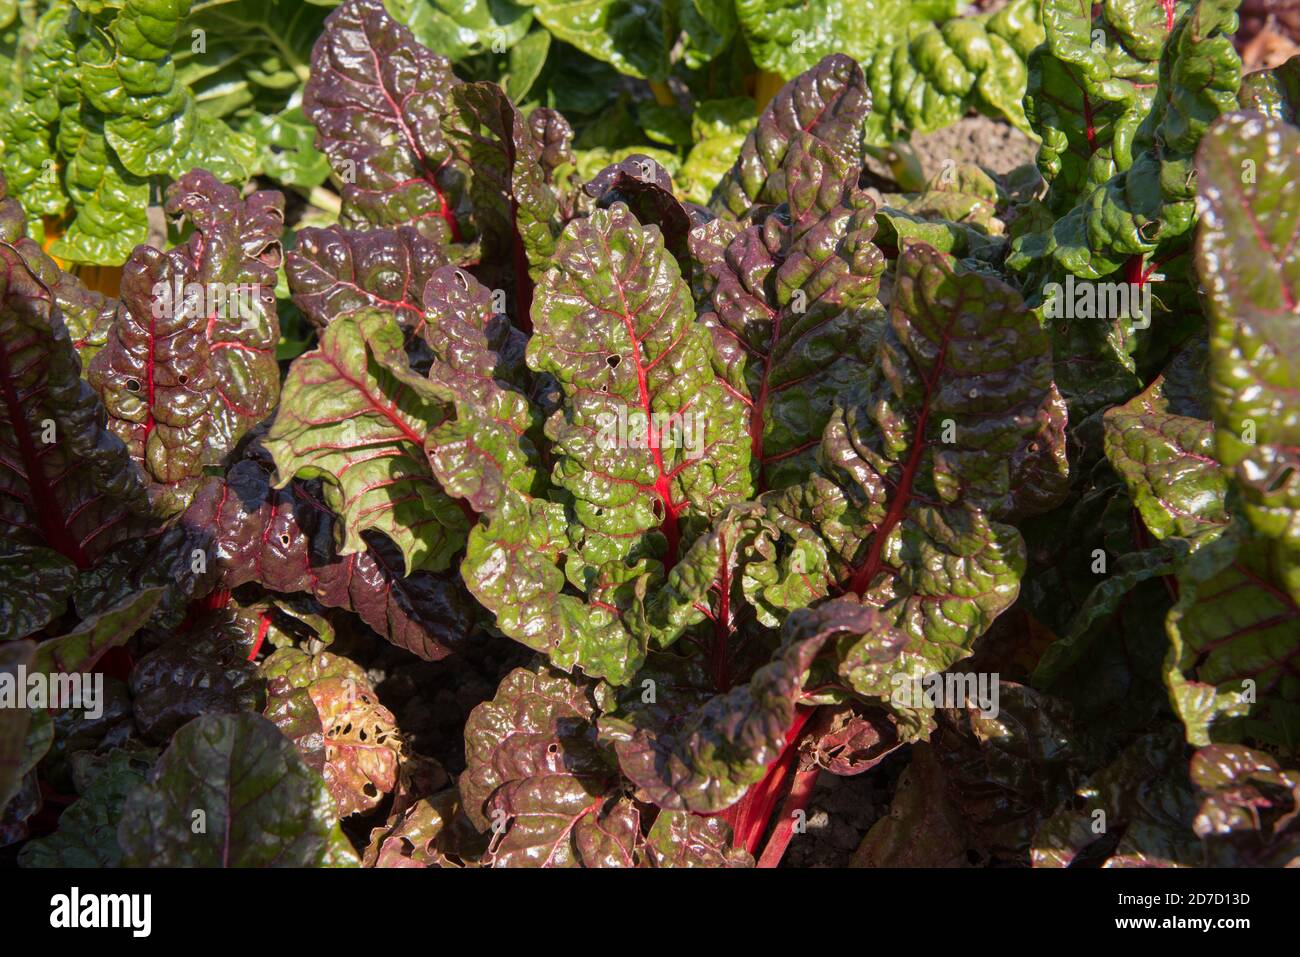 Tiges de rouge vif du Chard biologique 'Rhubarb' (Beta vulgaris) cultivé sur un allotement dans un jardin de légumes dans le Devon rural, Angleterre, Royaume-Uni Banque D'Images